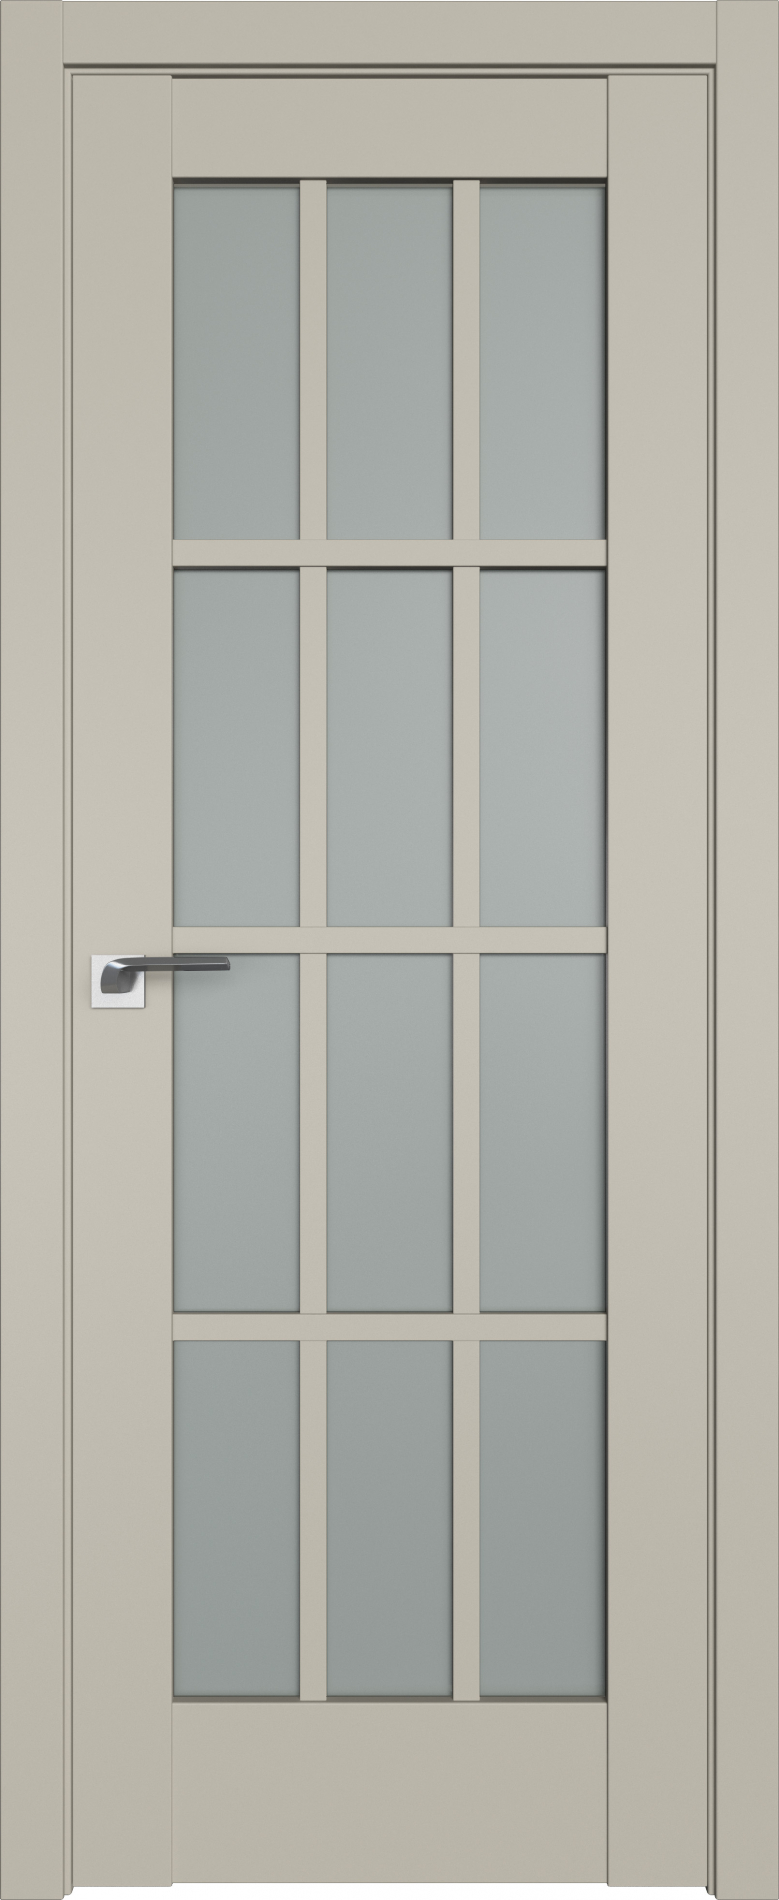 межкомнатные двери  Profil Doors 102U стекло шеллгрей